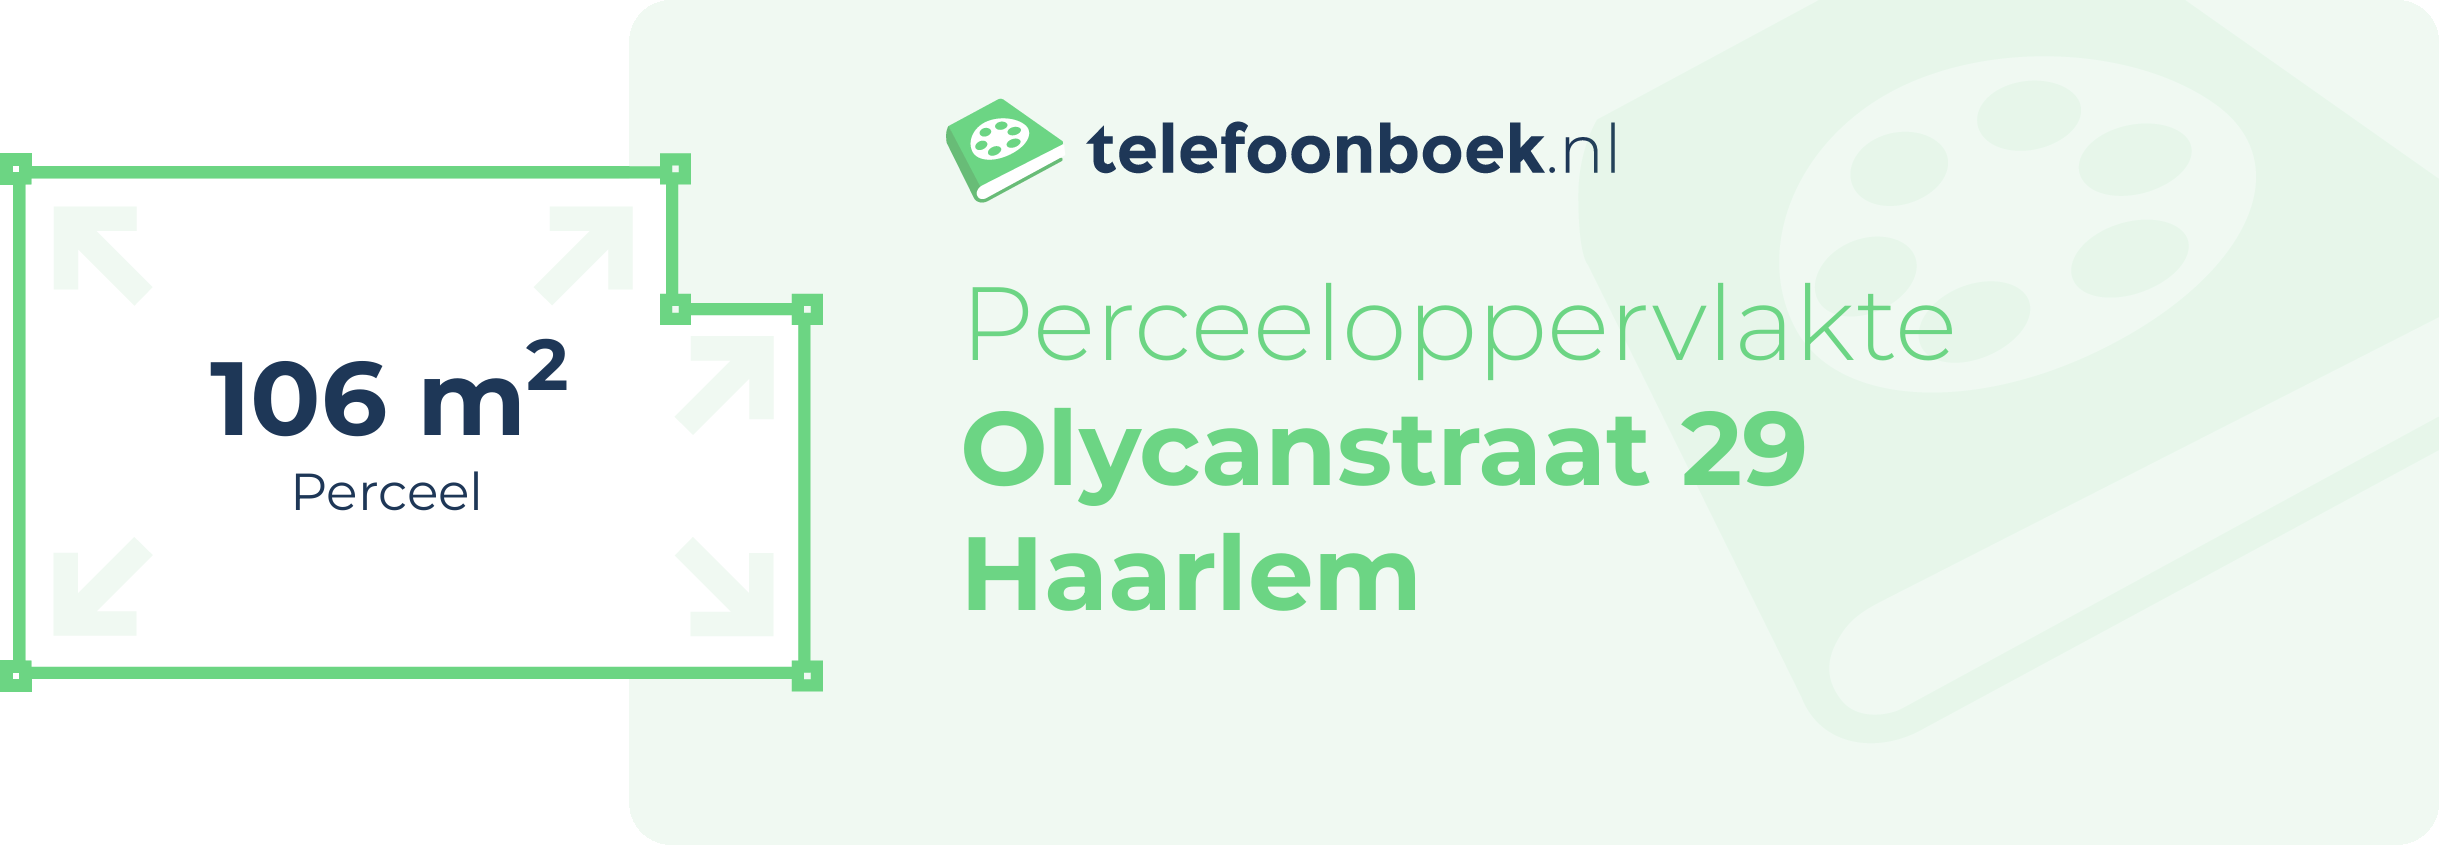 Perceeloppervlakte Olycanstraat 29 Haarlem